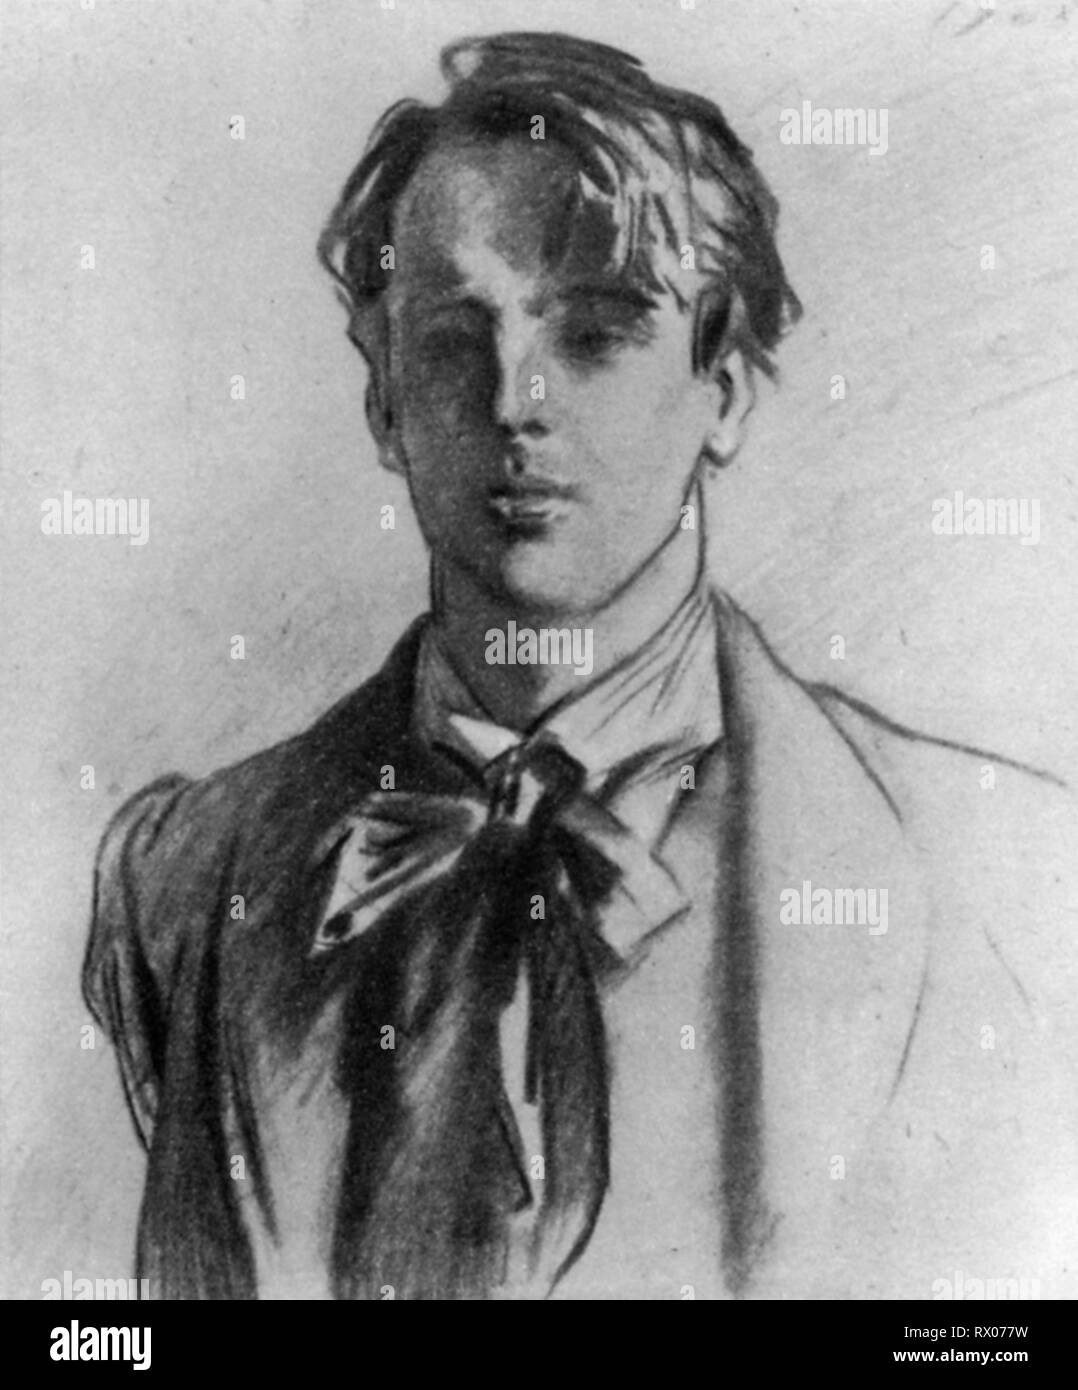 William Butler Yeats (1865-1939), 1908. Von John Singer Sargent (1856-1925). William Butler Yeats, irischer Dichter. Diese Zeichnung von Yeats wurde als Frontispiece zum ersten Band seiner gesammelten Gedichte (1908) in Auftrag gegeben. Stockfoto